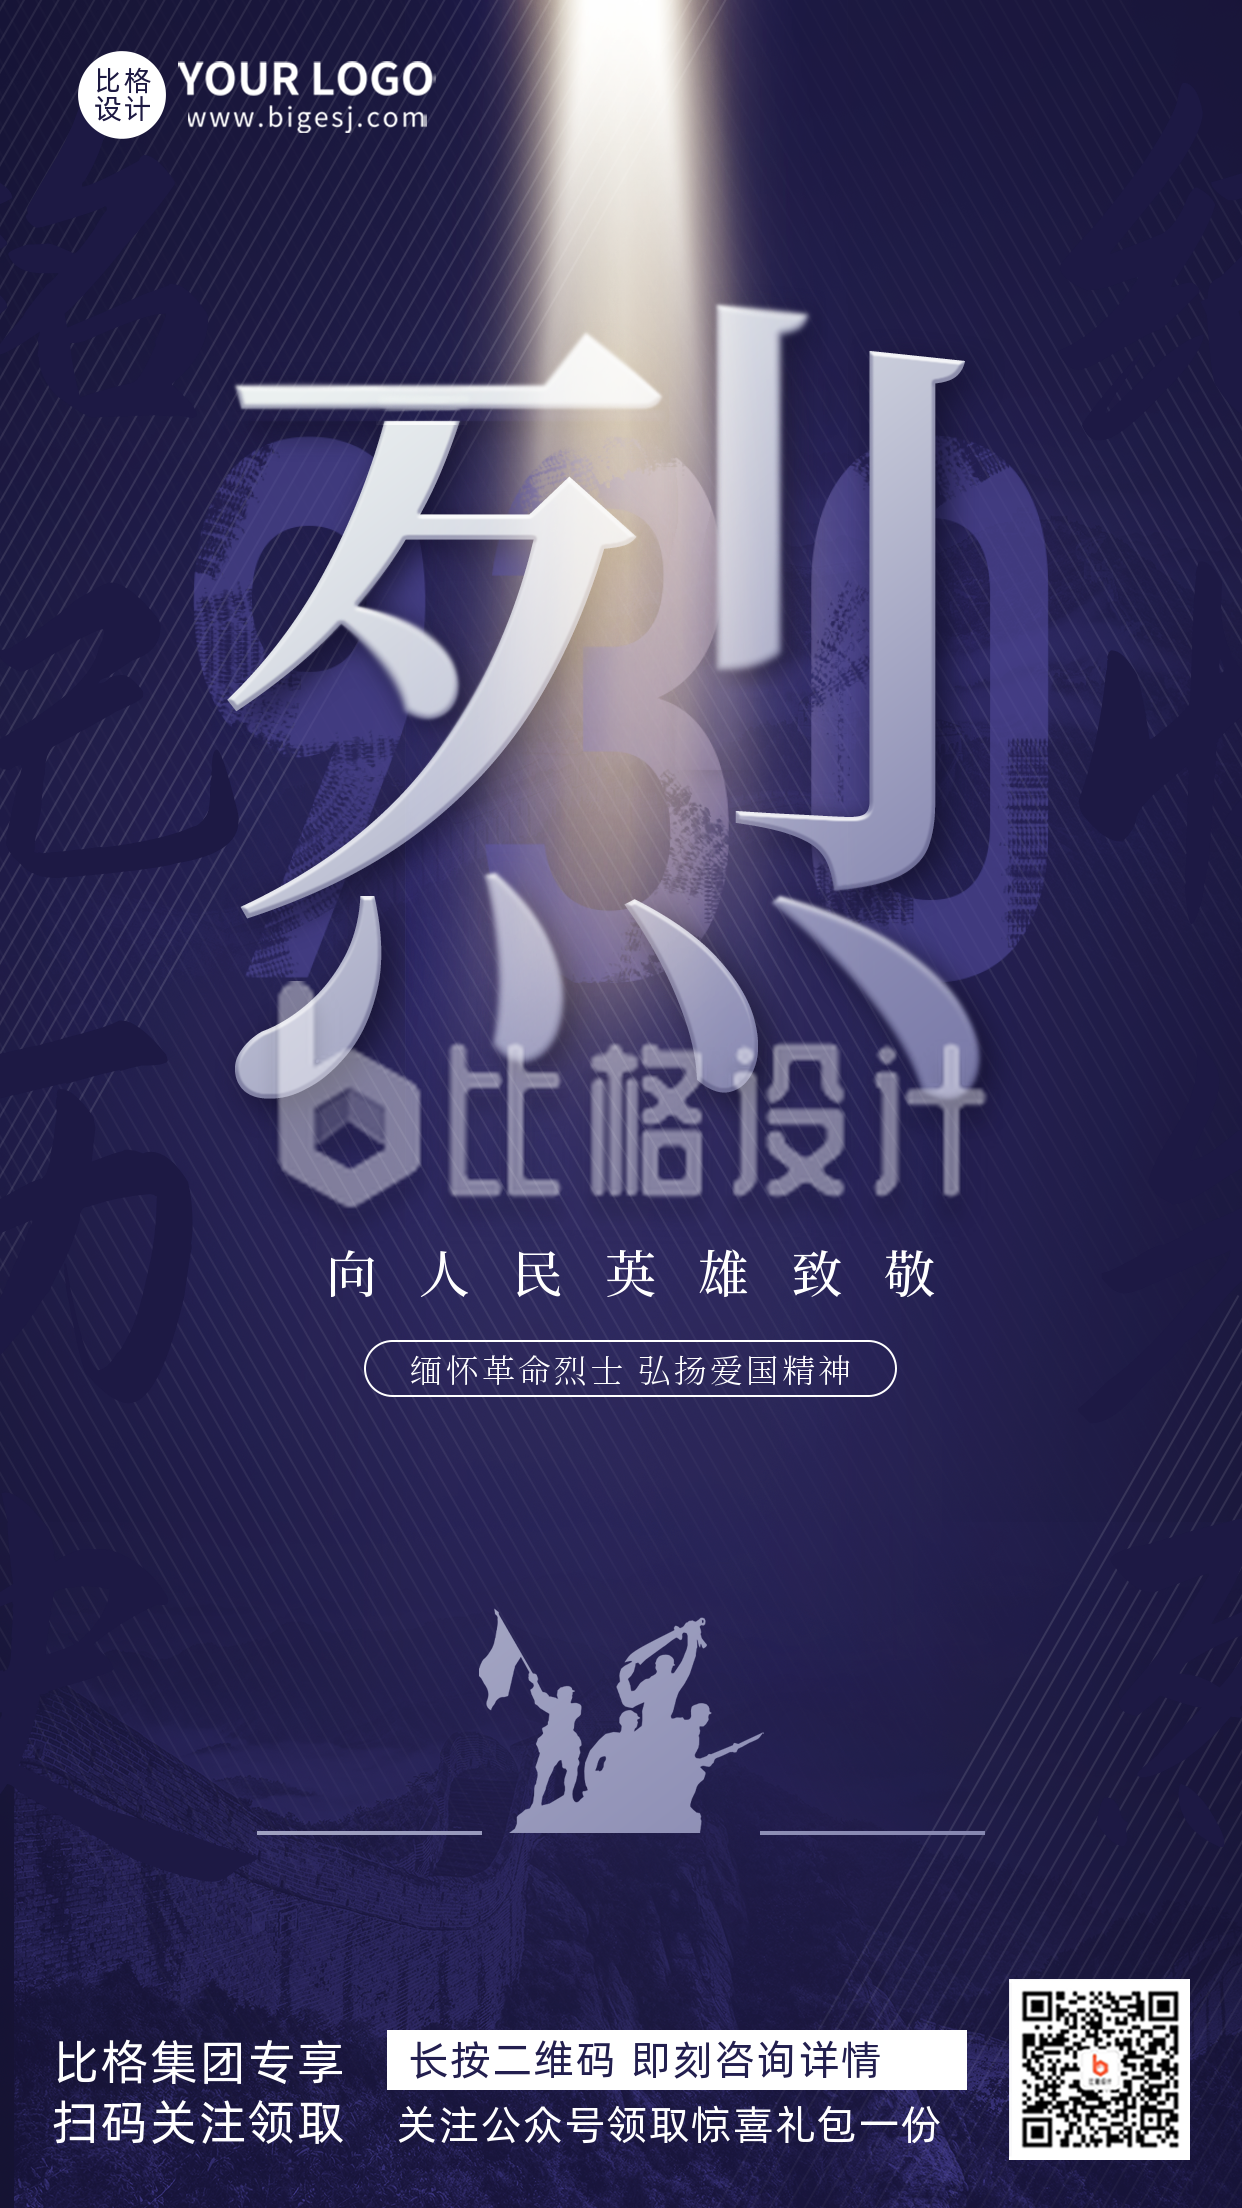 蓝色创意文字风烈士节节日宣传手机海报